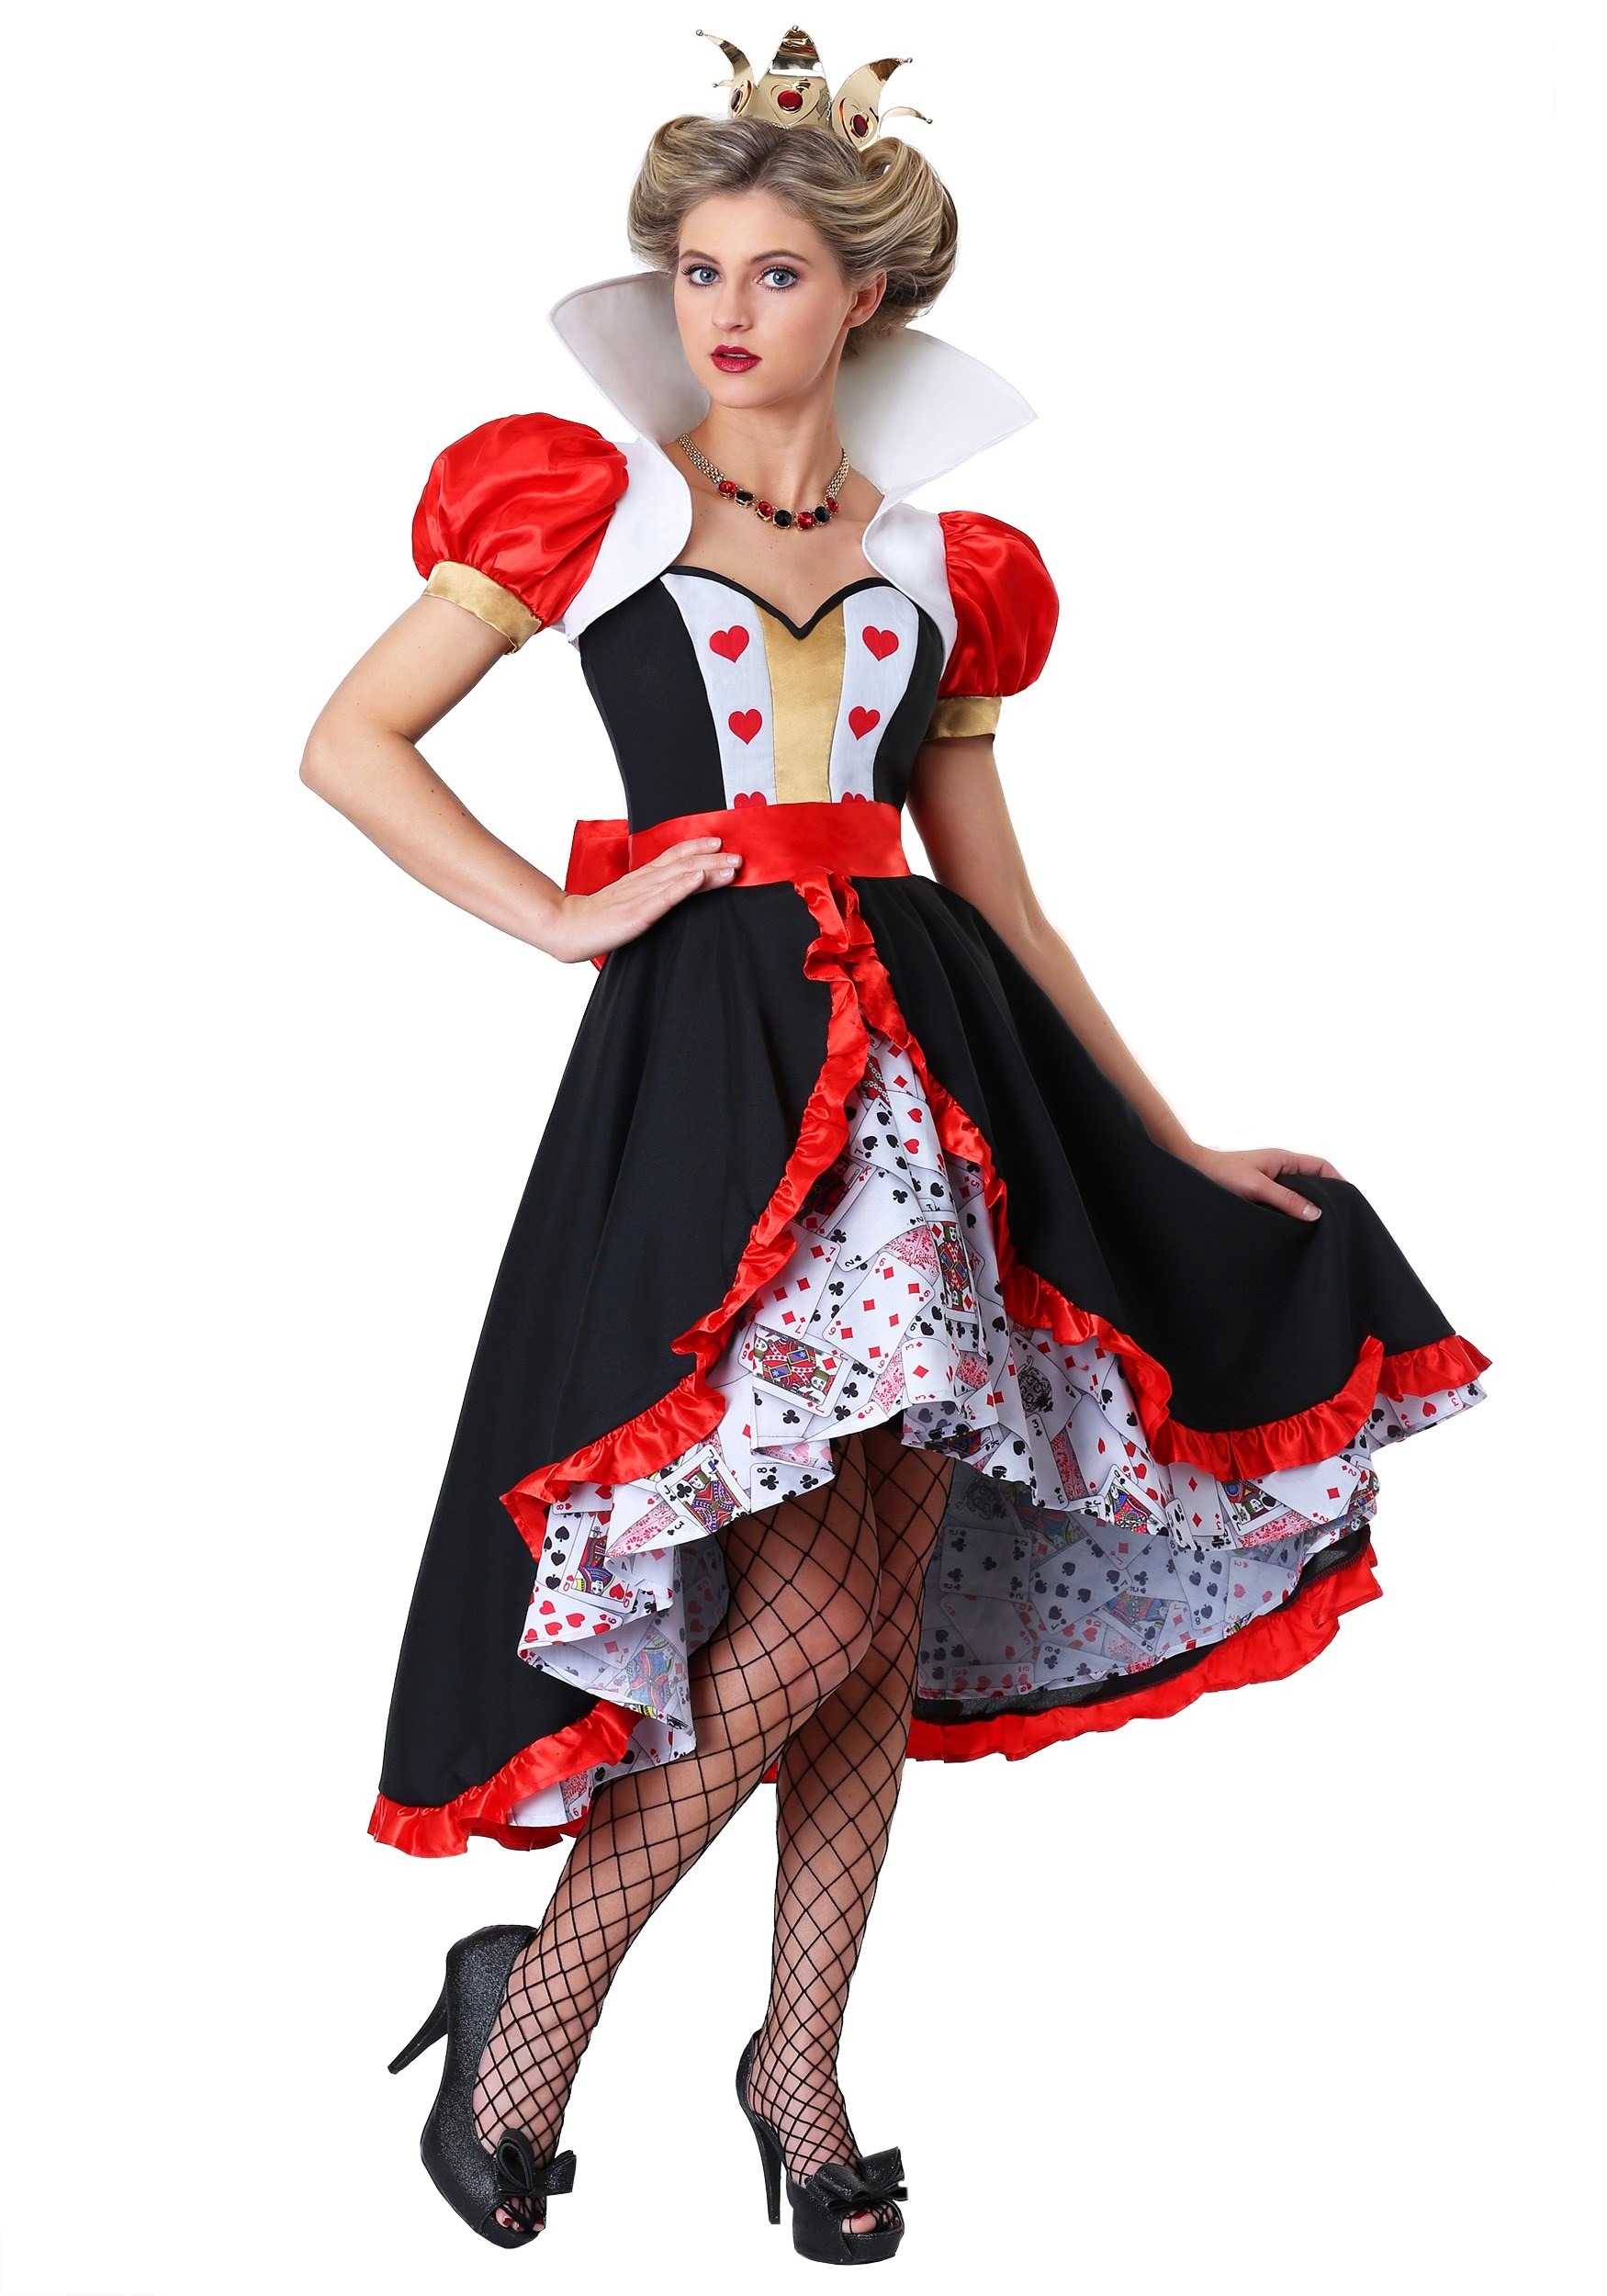 Queen of Hearts Scepter -   Queen of hearts costume, Queen of hearts